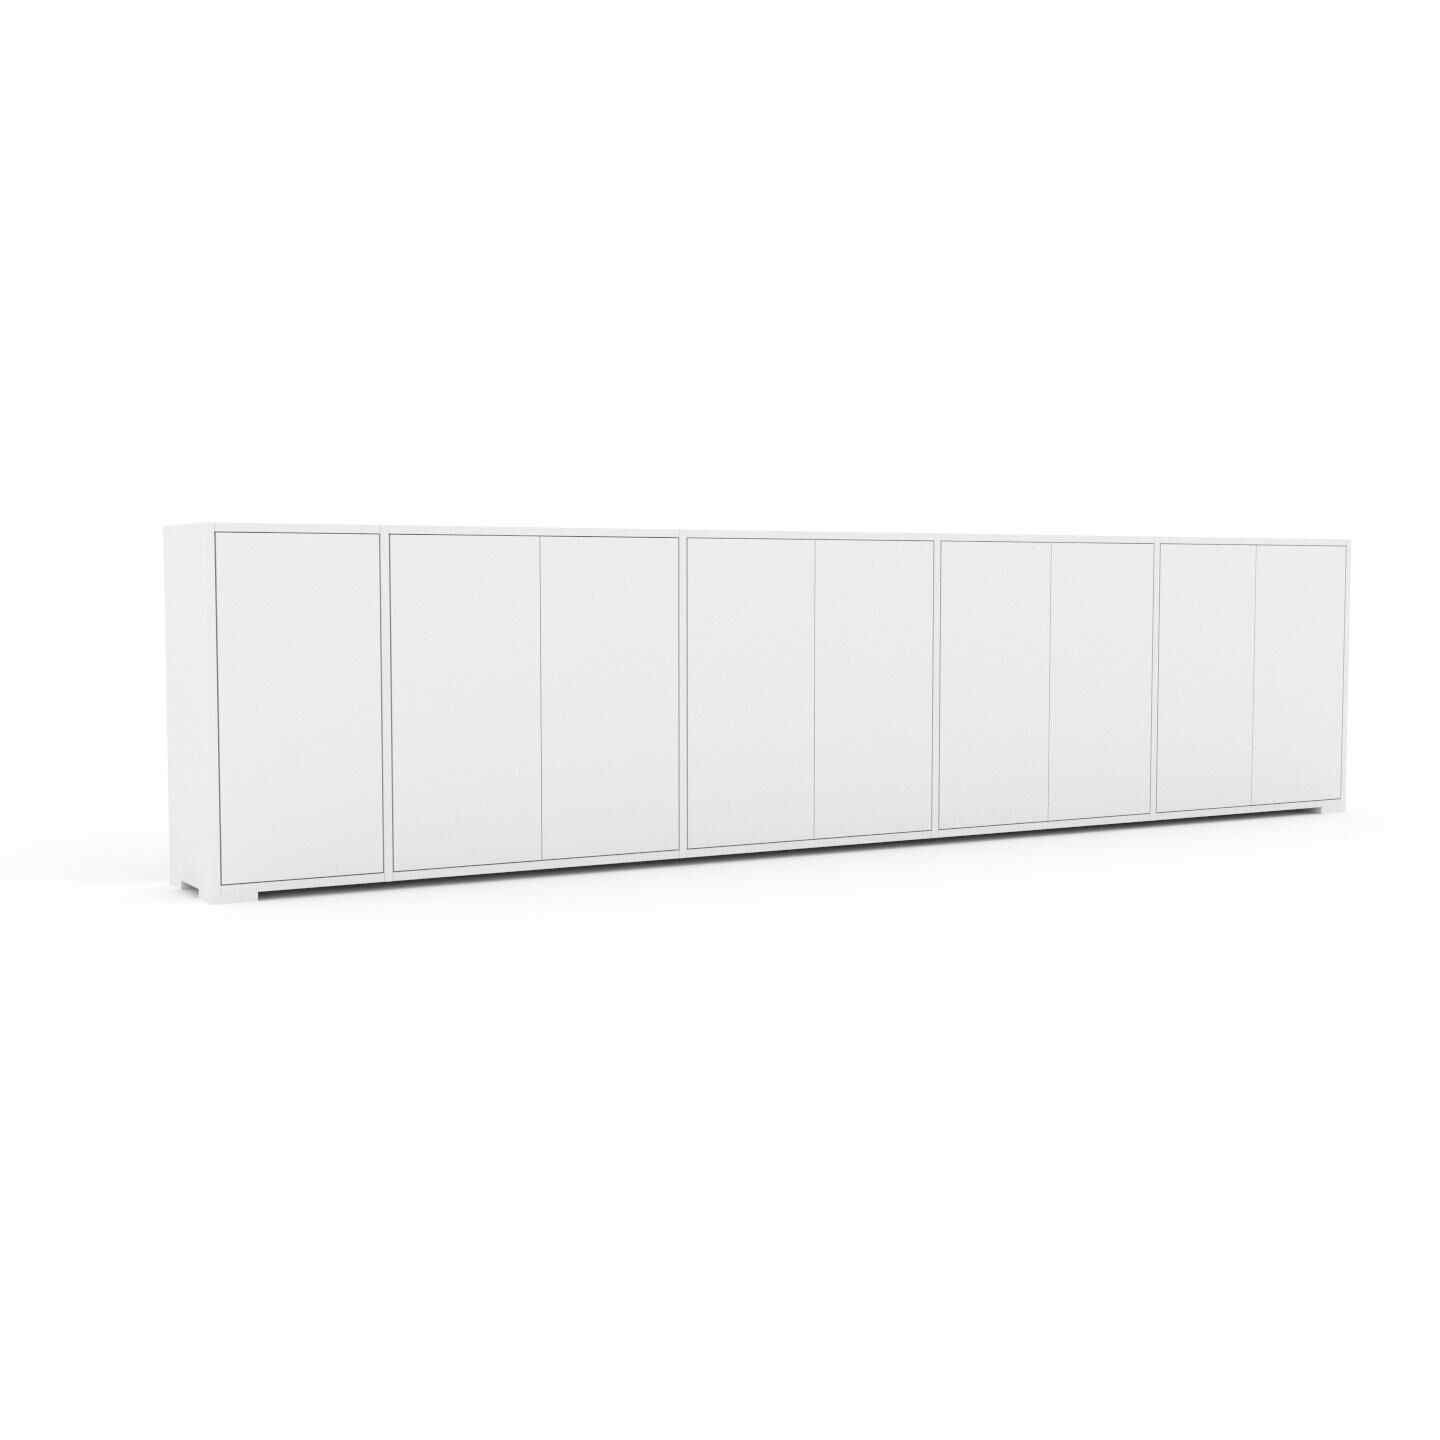 MYCS Bücherregal Weiß - Modernes Regal für Bücher: Türen in Weiß - 339 x 81 x 35 cm, Individuell konfigurierbar